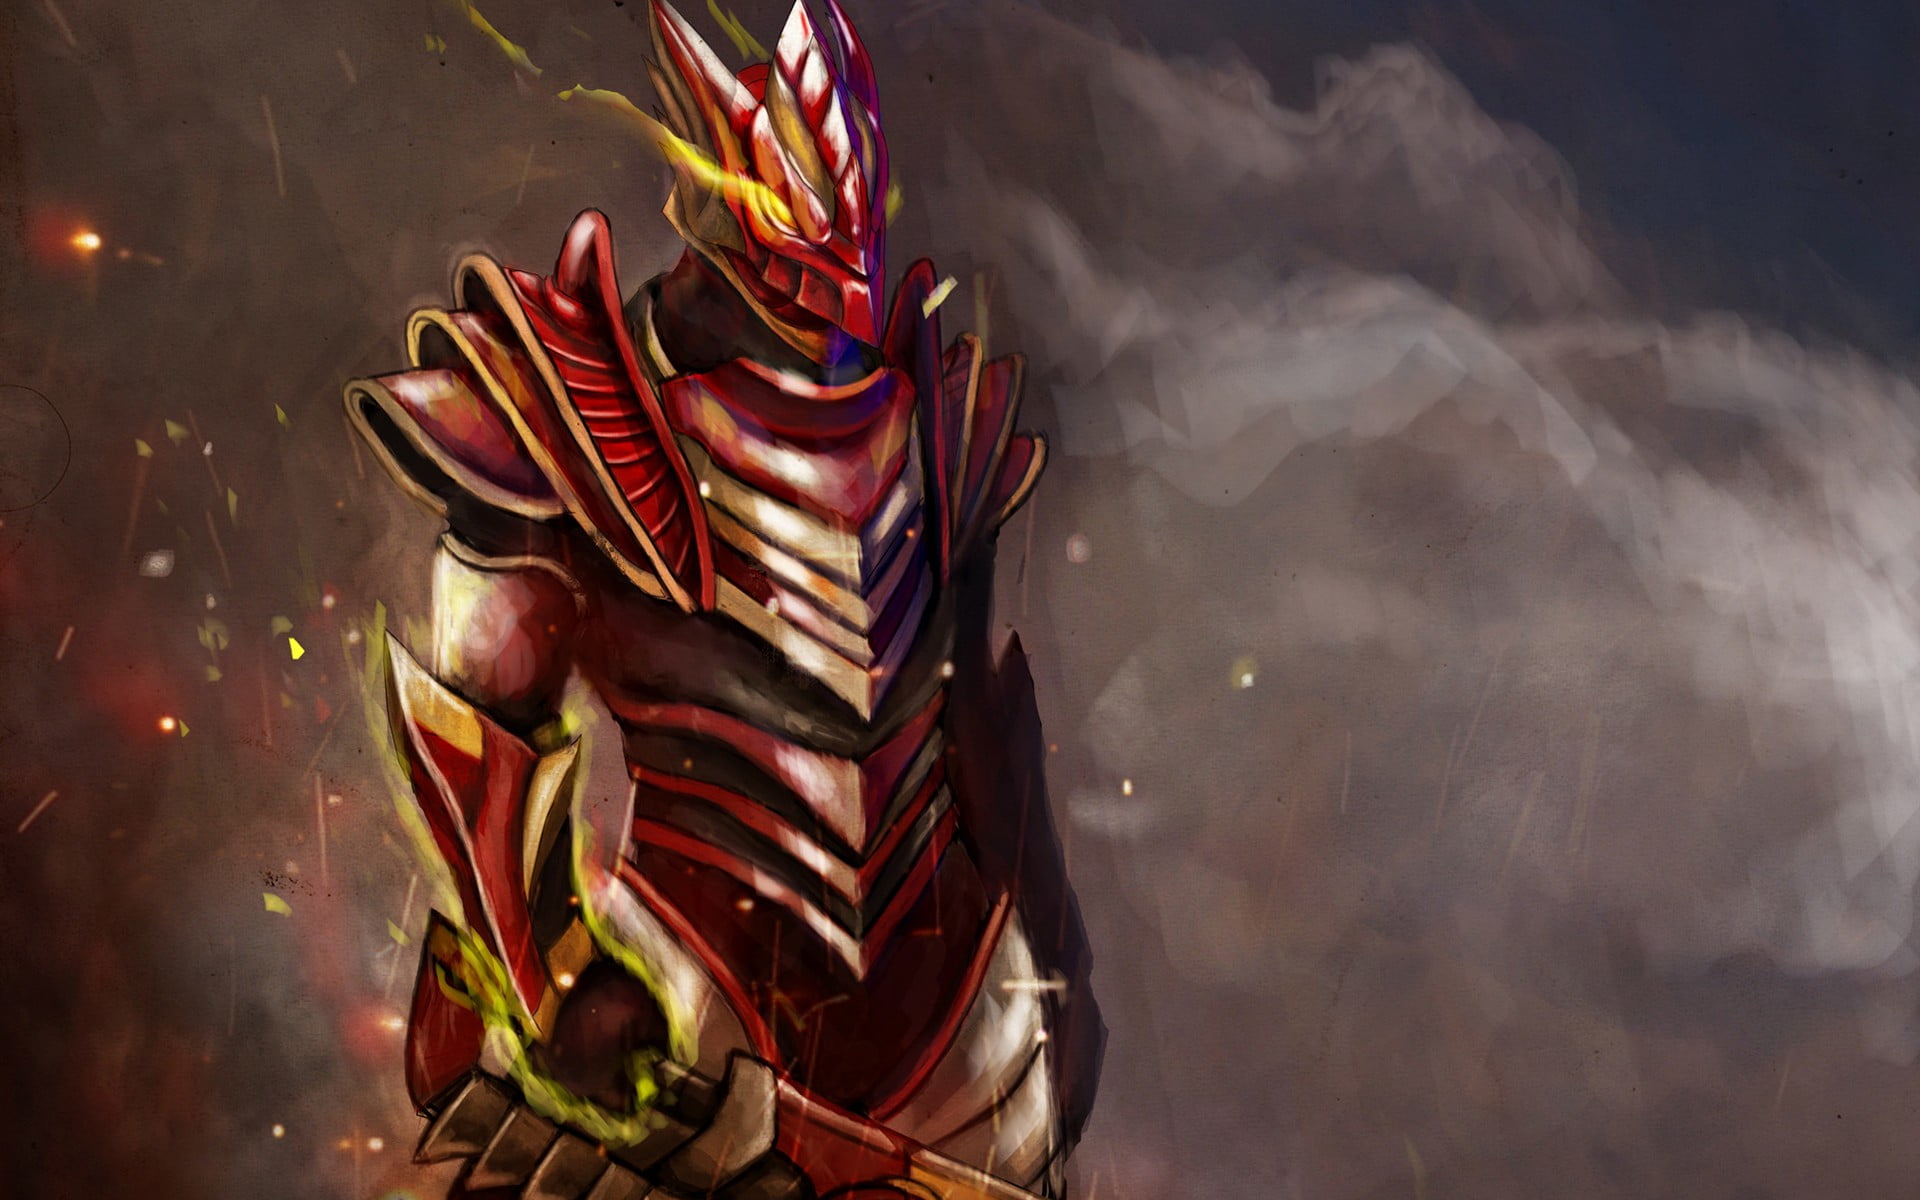 dragon knight armor skyrim